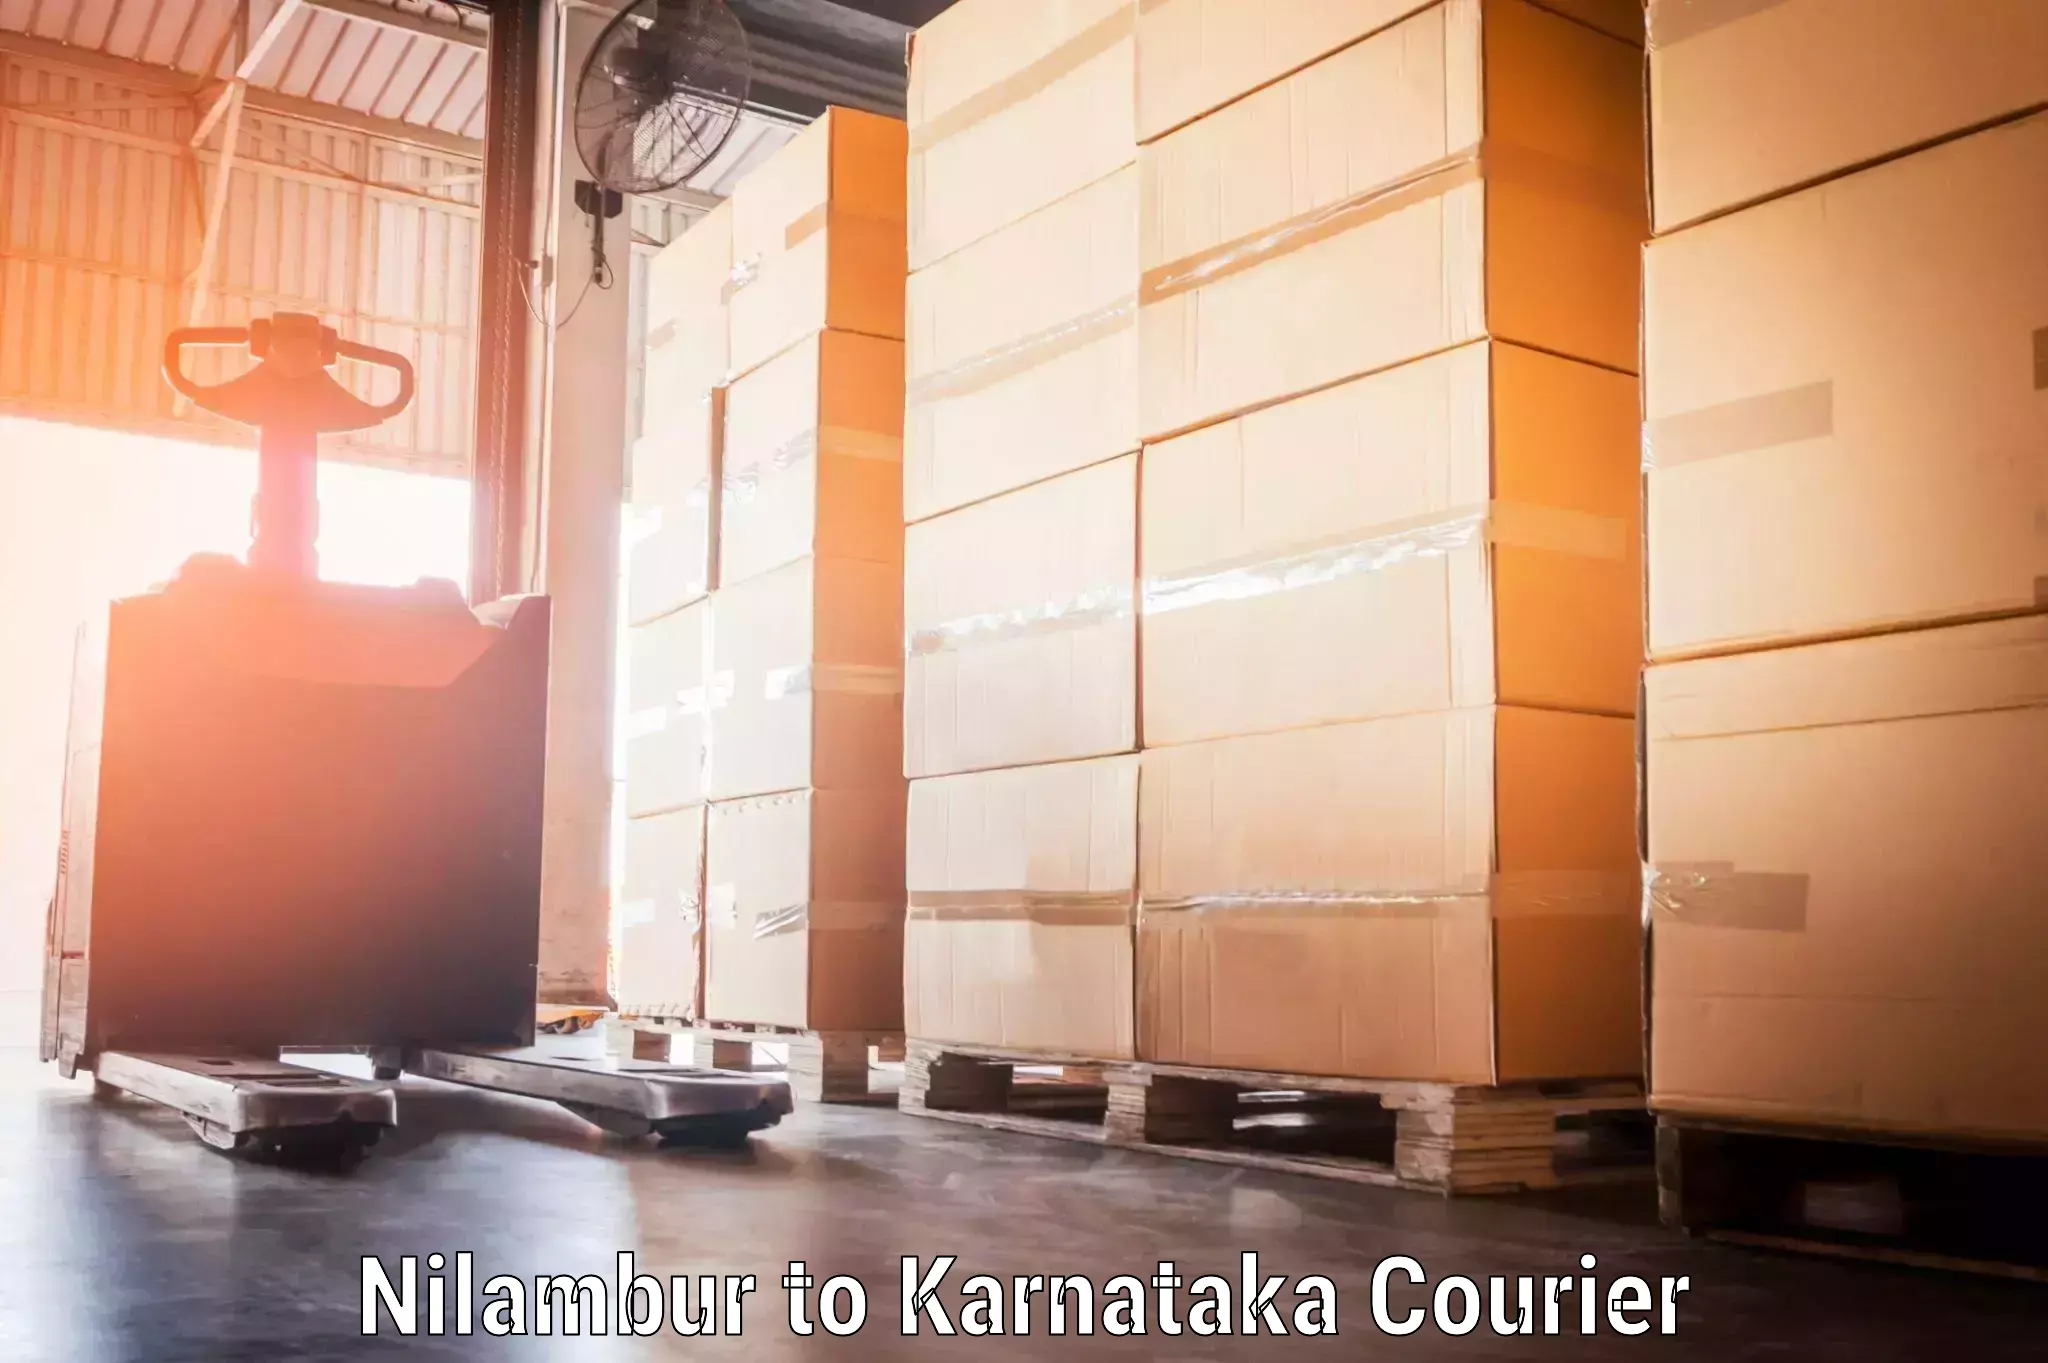 Baggage shipping experts Nilambur to Karnataka